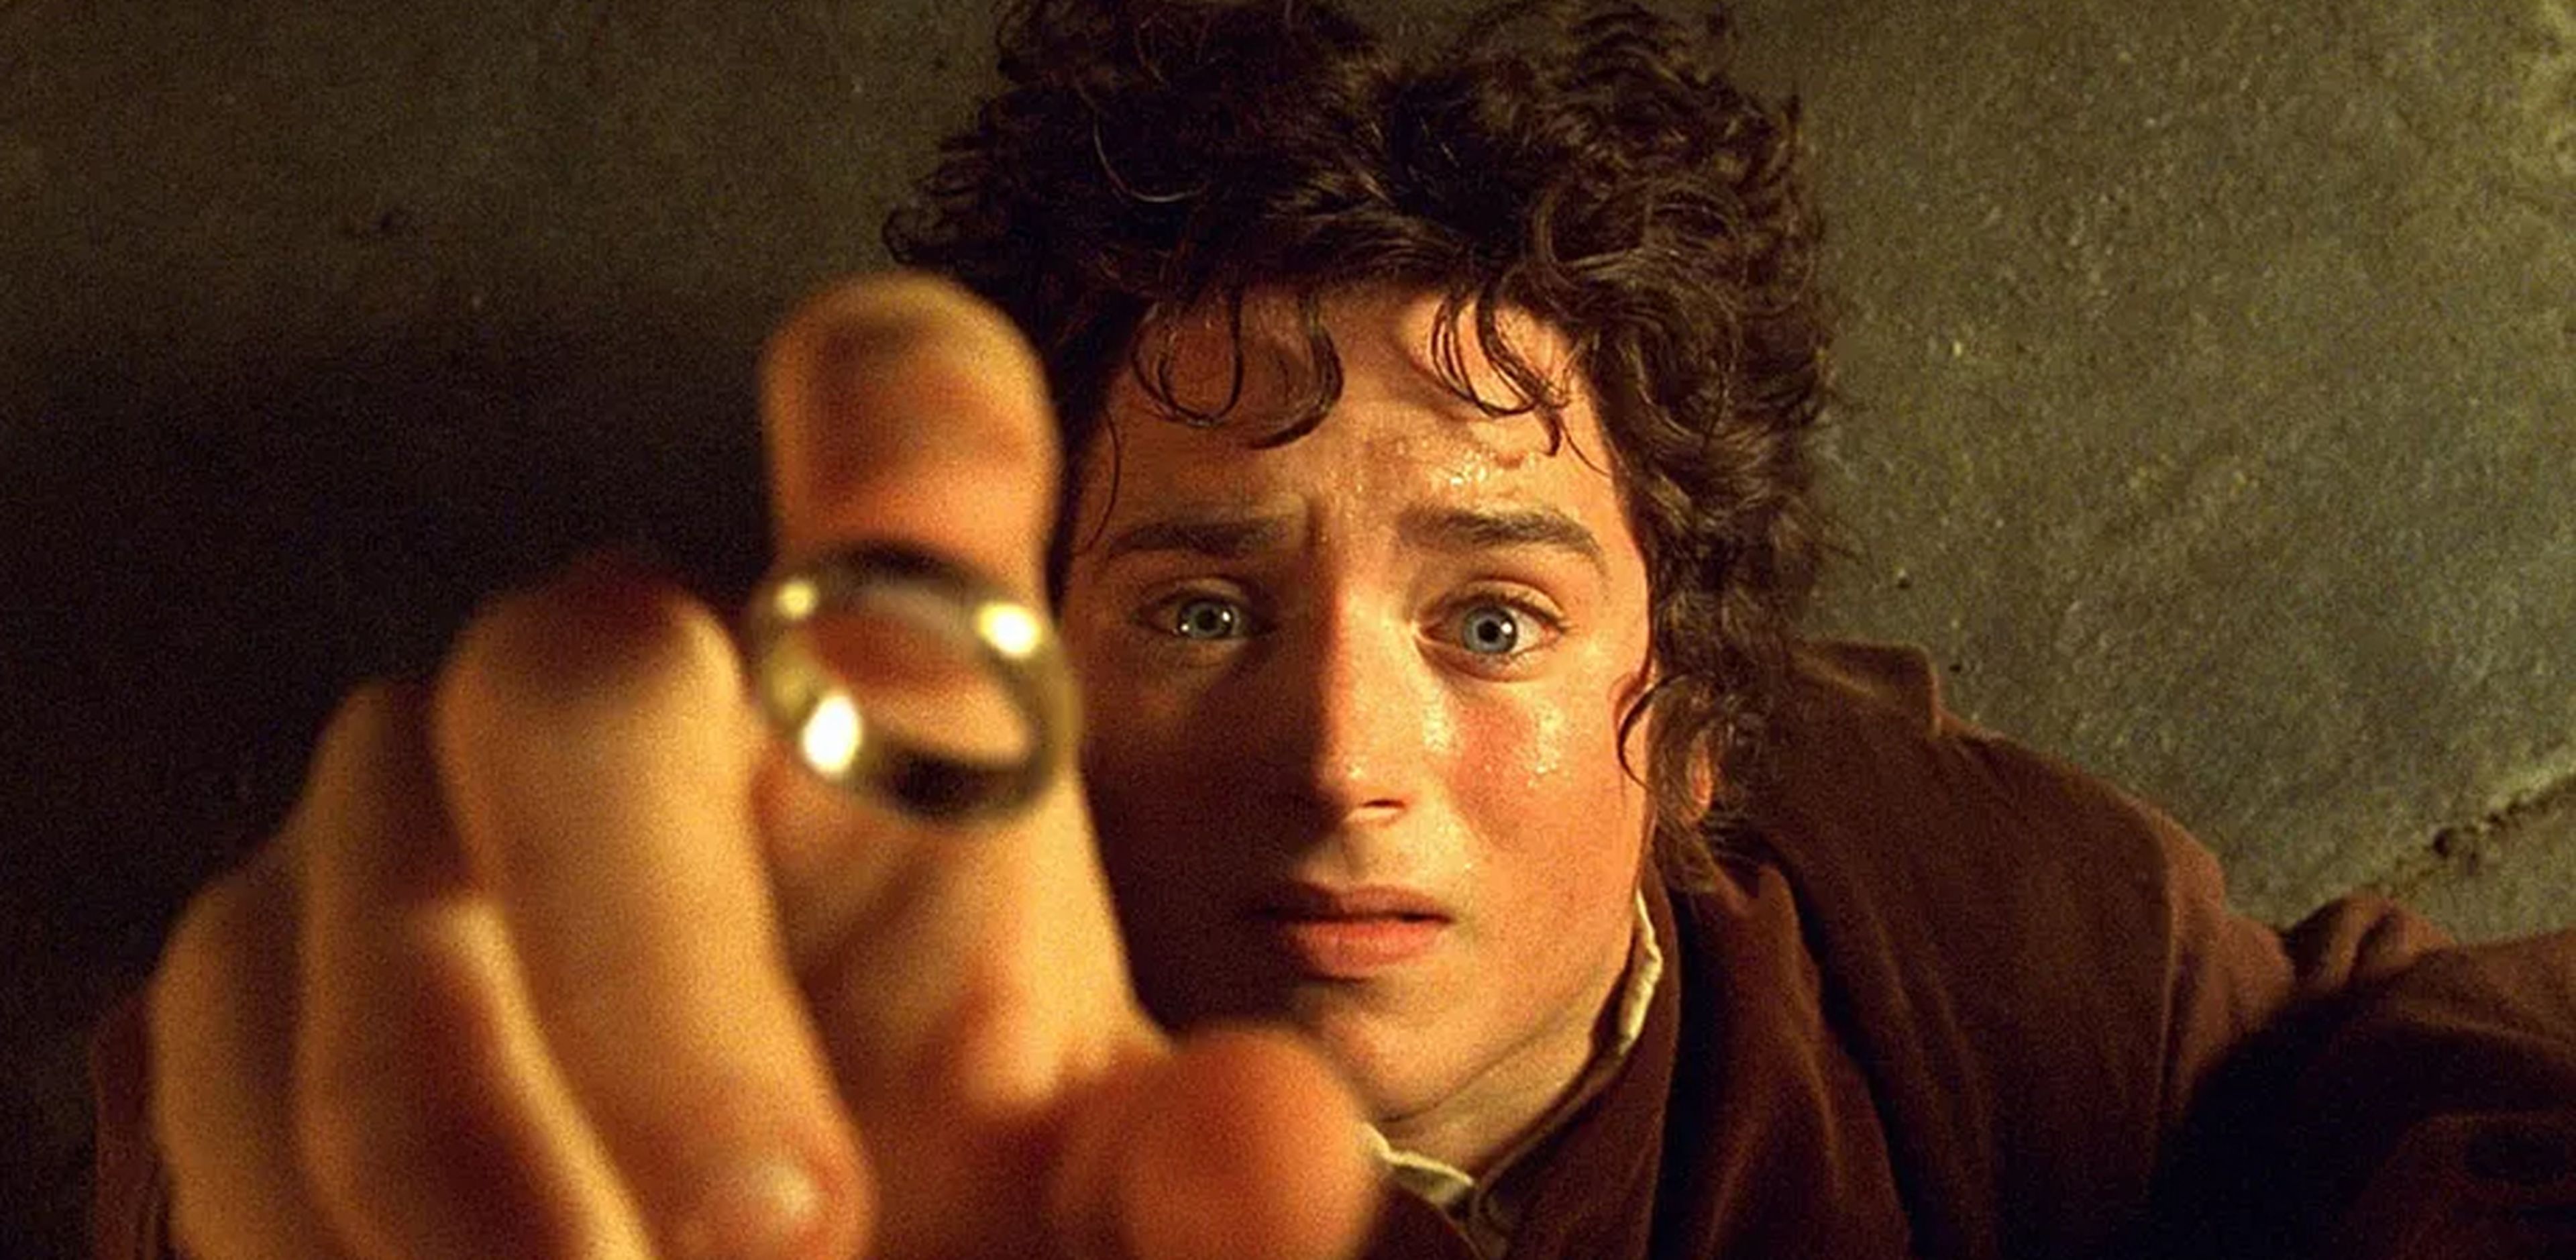 Frodo en El senor de los anillos